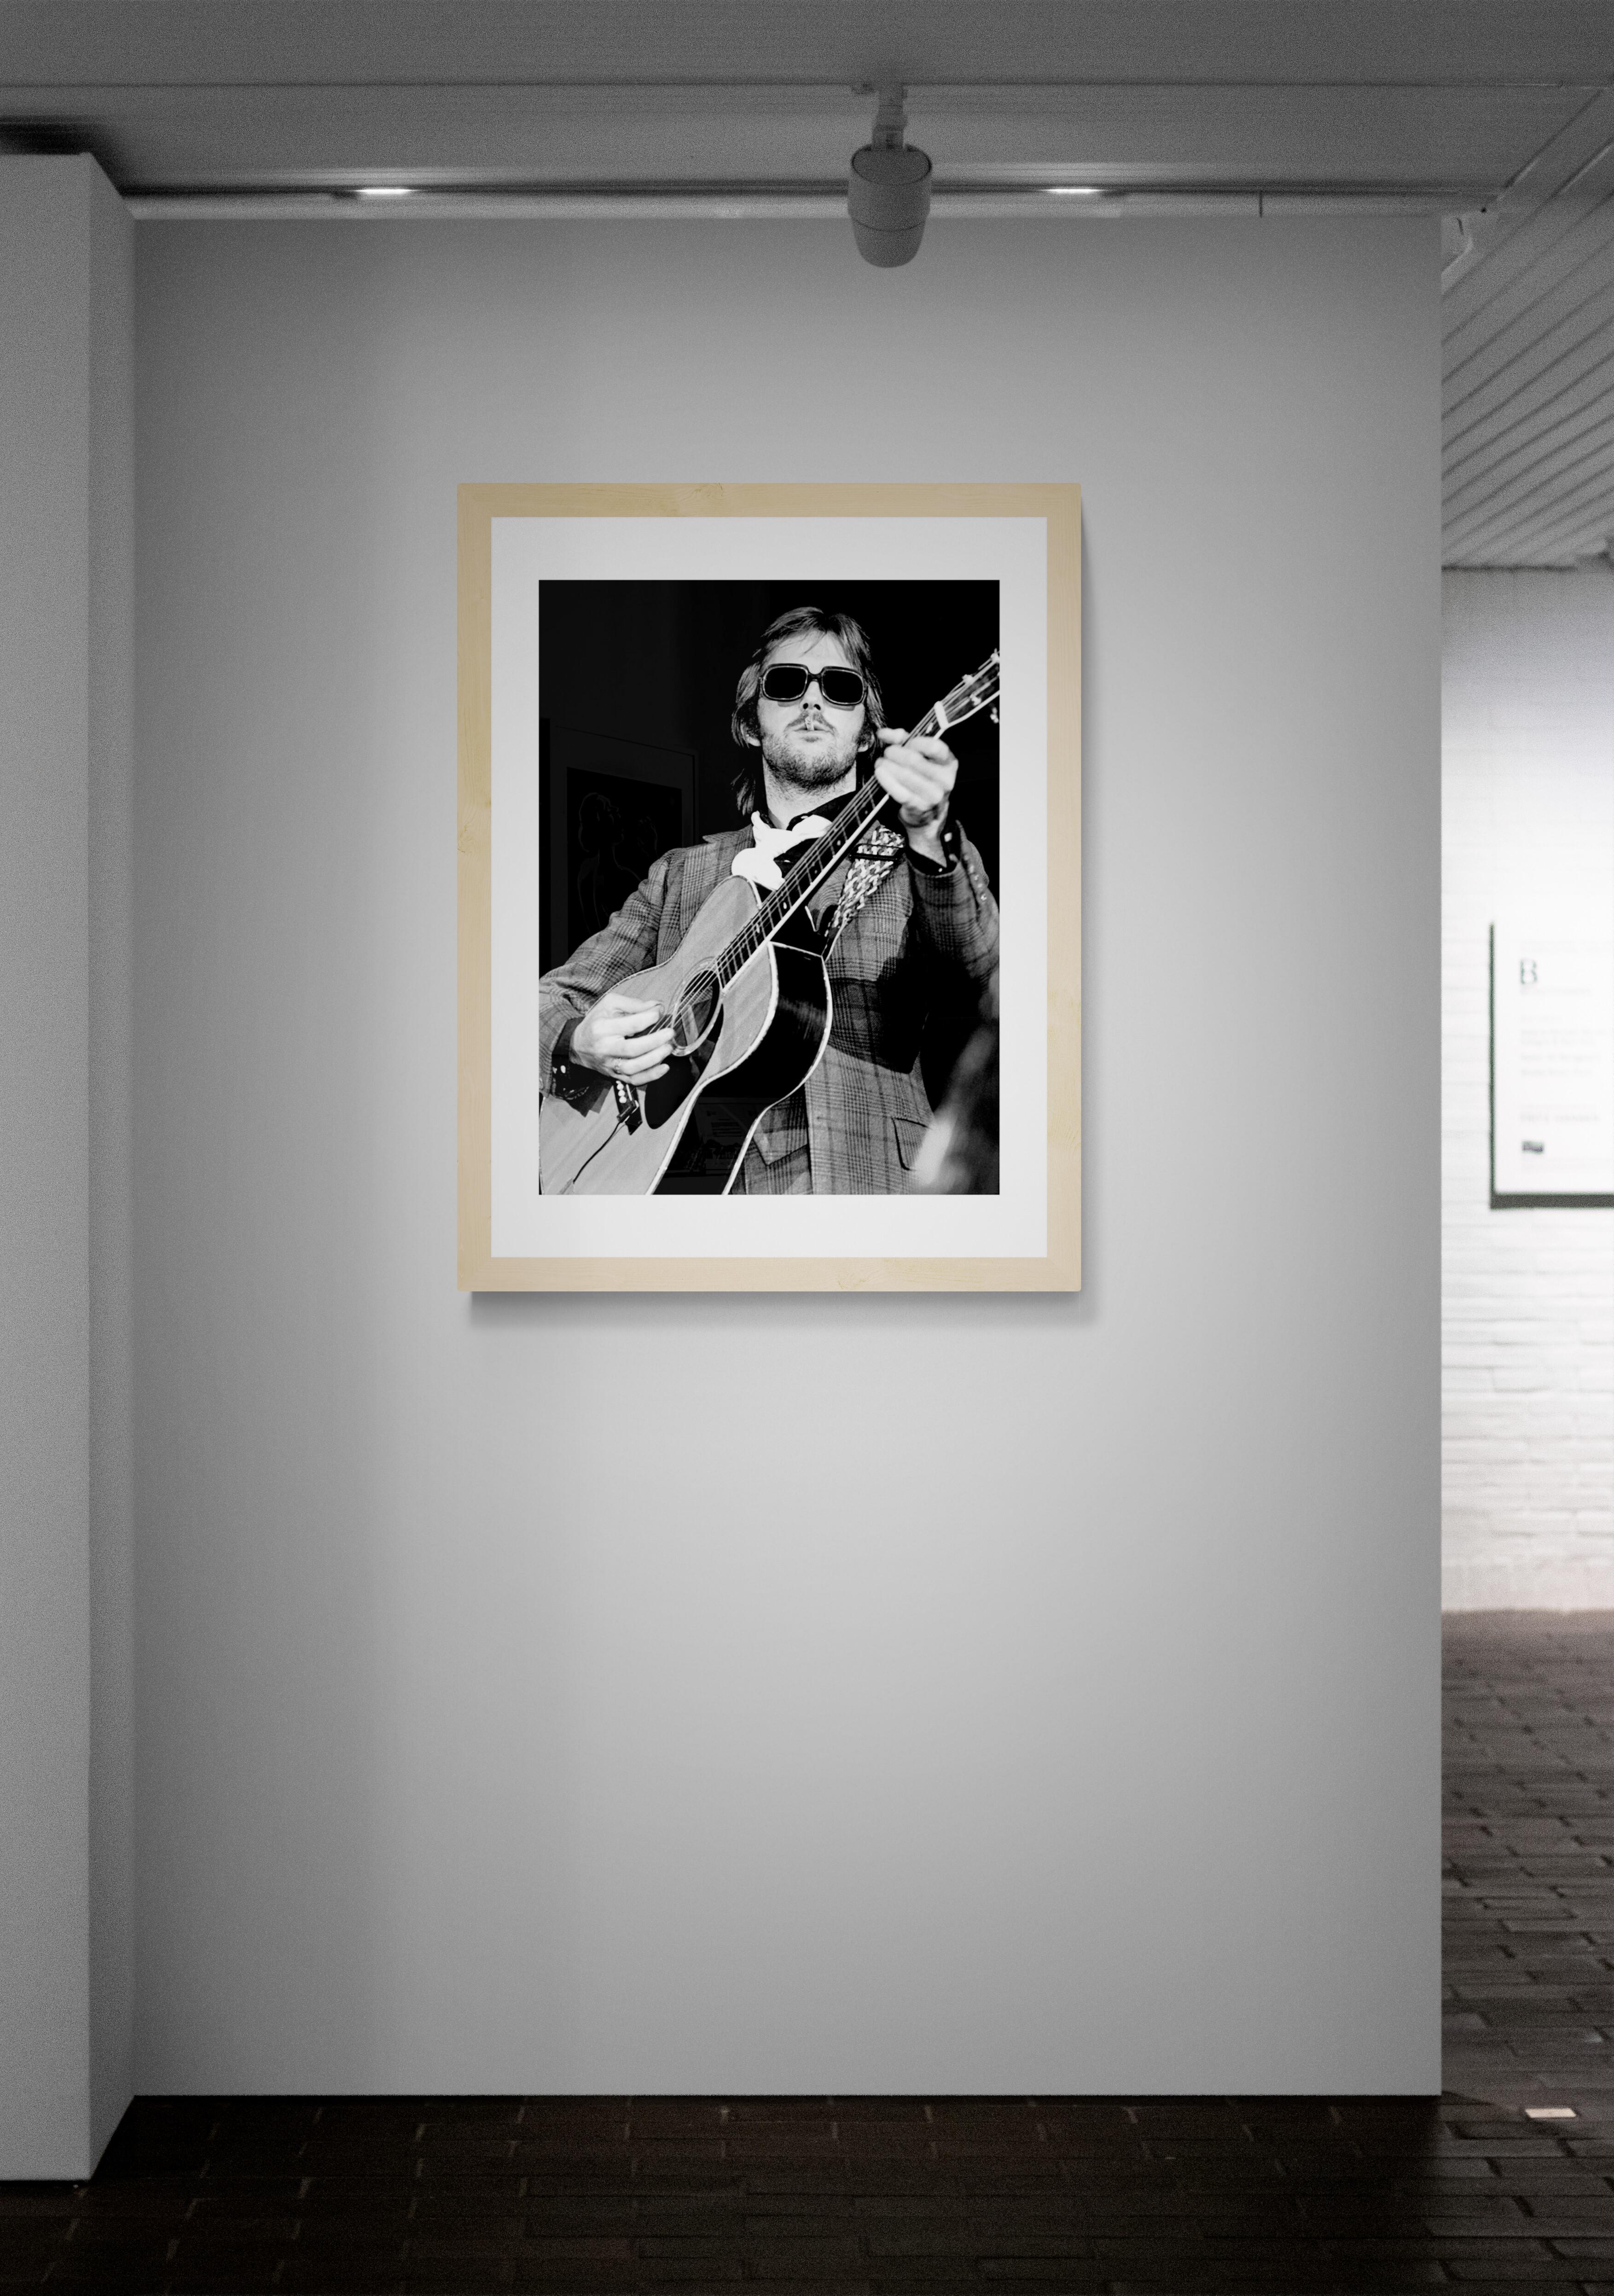 Titel: Eric Clapton Konzertfoto
Künstler: Richard E. Aaron
Nachlass-Edition: Handnummeriert mit Nachlassstempel im Rand, Signaturstempel auf der Rückseite, Pigmentdruck auf Hahnemühle Photo Rag Pearl, 100% Baumwollpapier, Kunstdruckpapier.